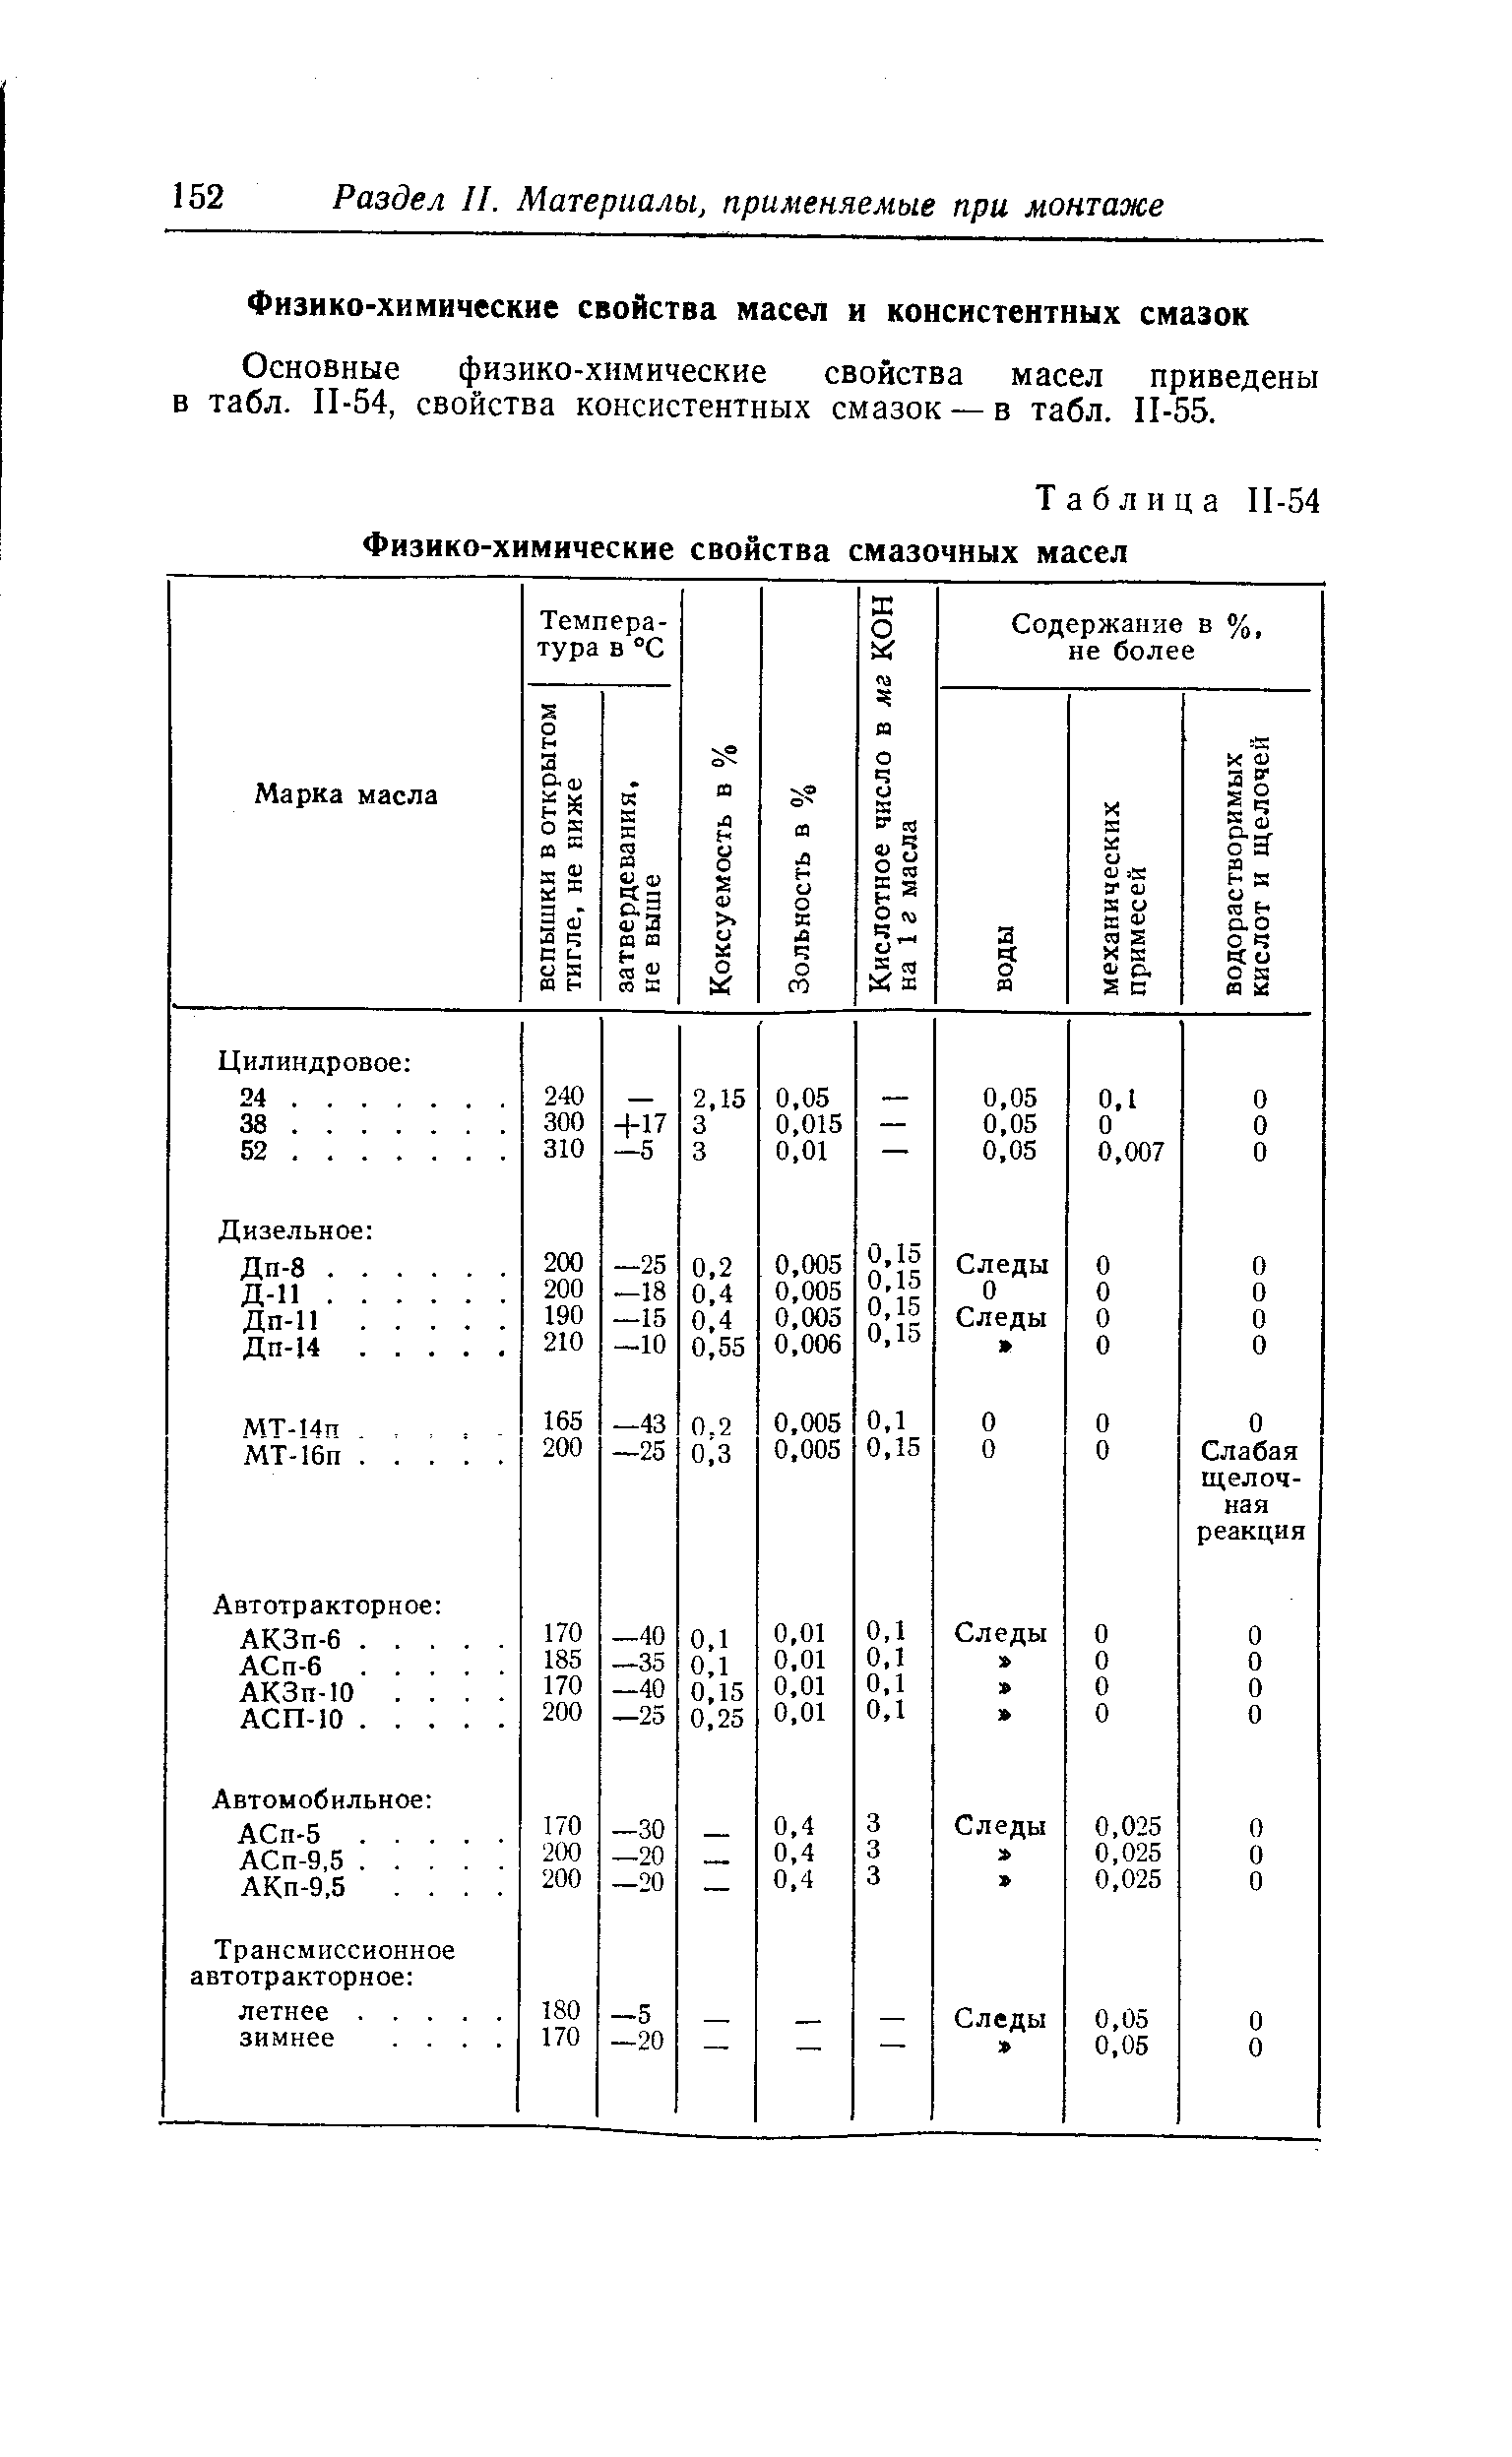 Основные физико-химические свойства масел приведены в табл. П-54, свойства консистентных смазок —в табл. П-55.
